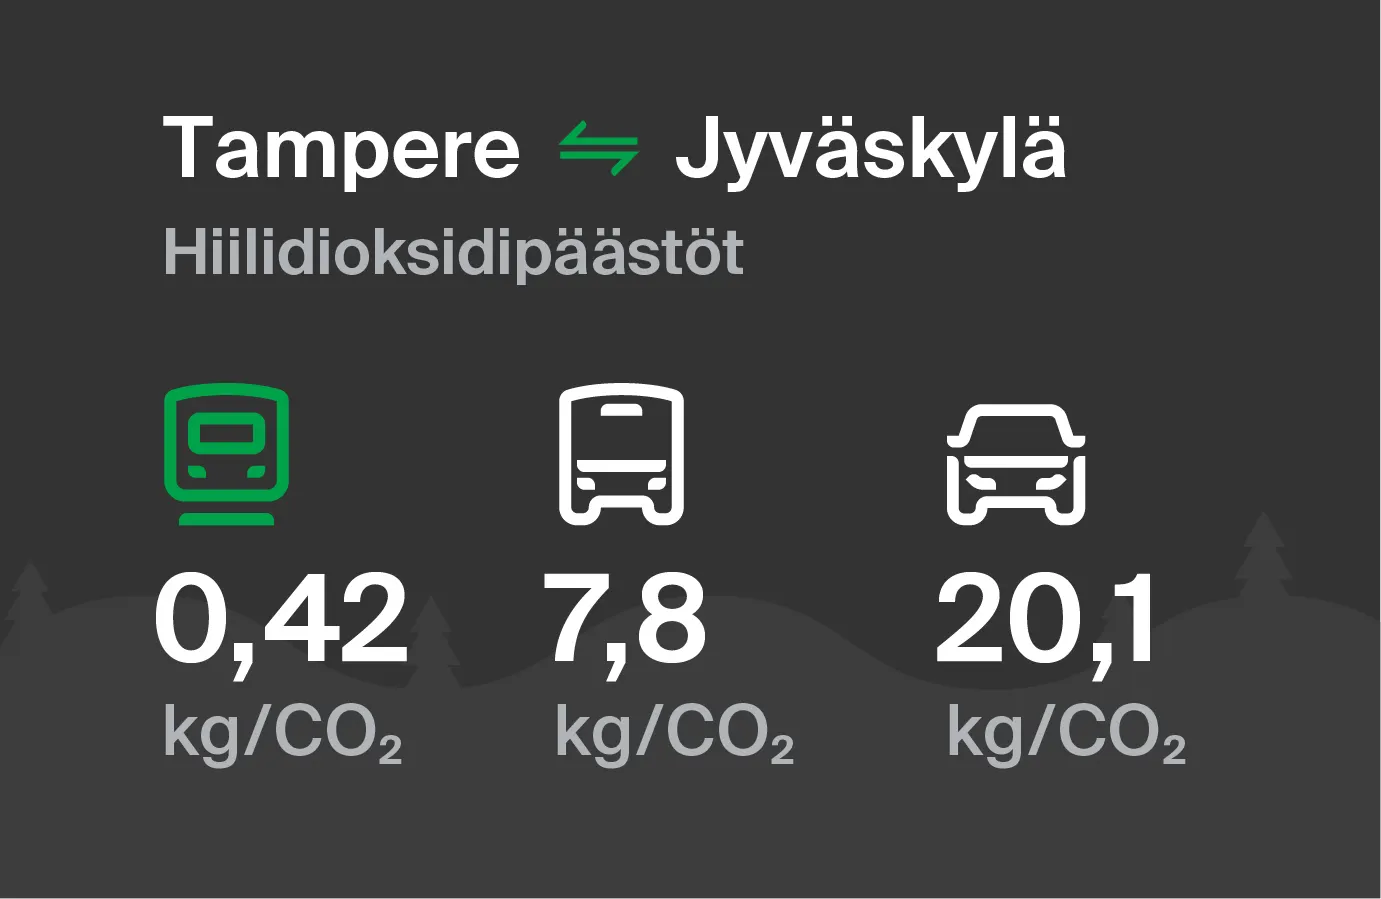 Hiilidioksidipäästöt Tampereelta Jyväskylään eri kulkuvälinemuodoilla: junalla 0,42 kg/CO2, bussilla 7,8 kg/CO2 ja autolla 20,1 kg/CO2.